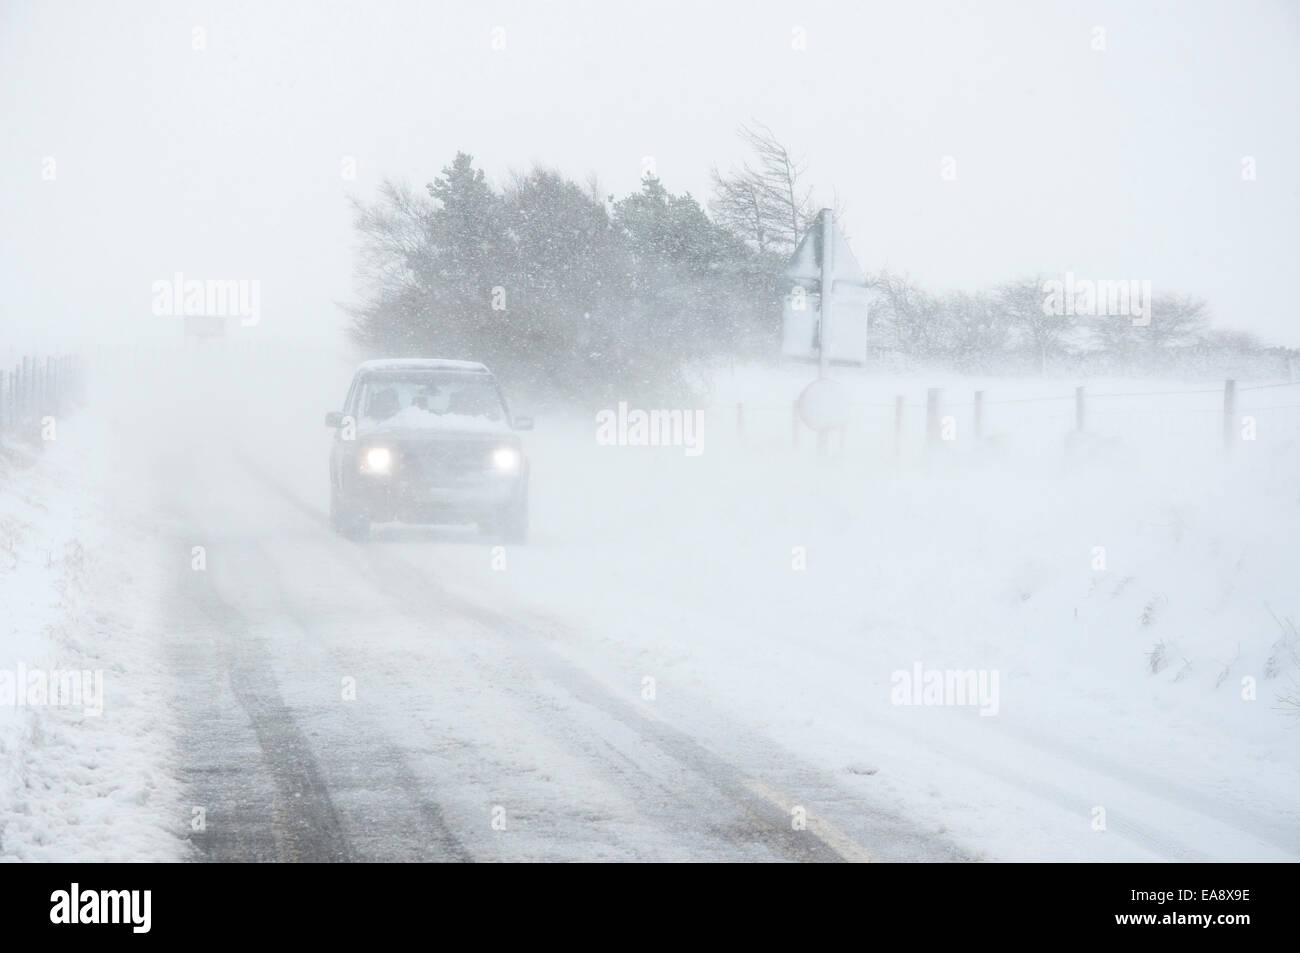 Una vettura in condizioni di blizzard la guida verso il basso i monaci road con i fari accesi. Vento che soffia la neve su strada. Foto Stock